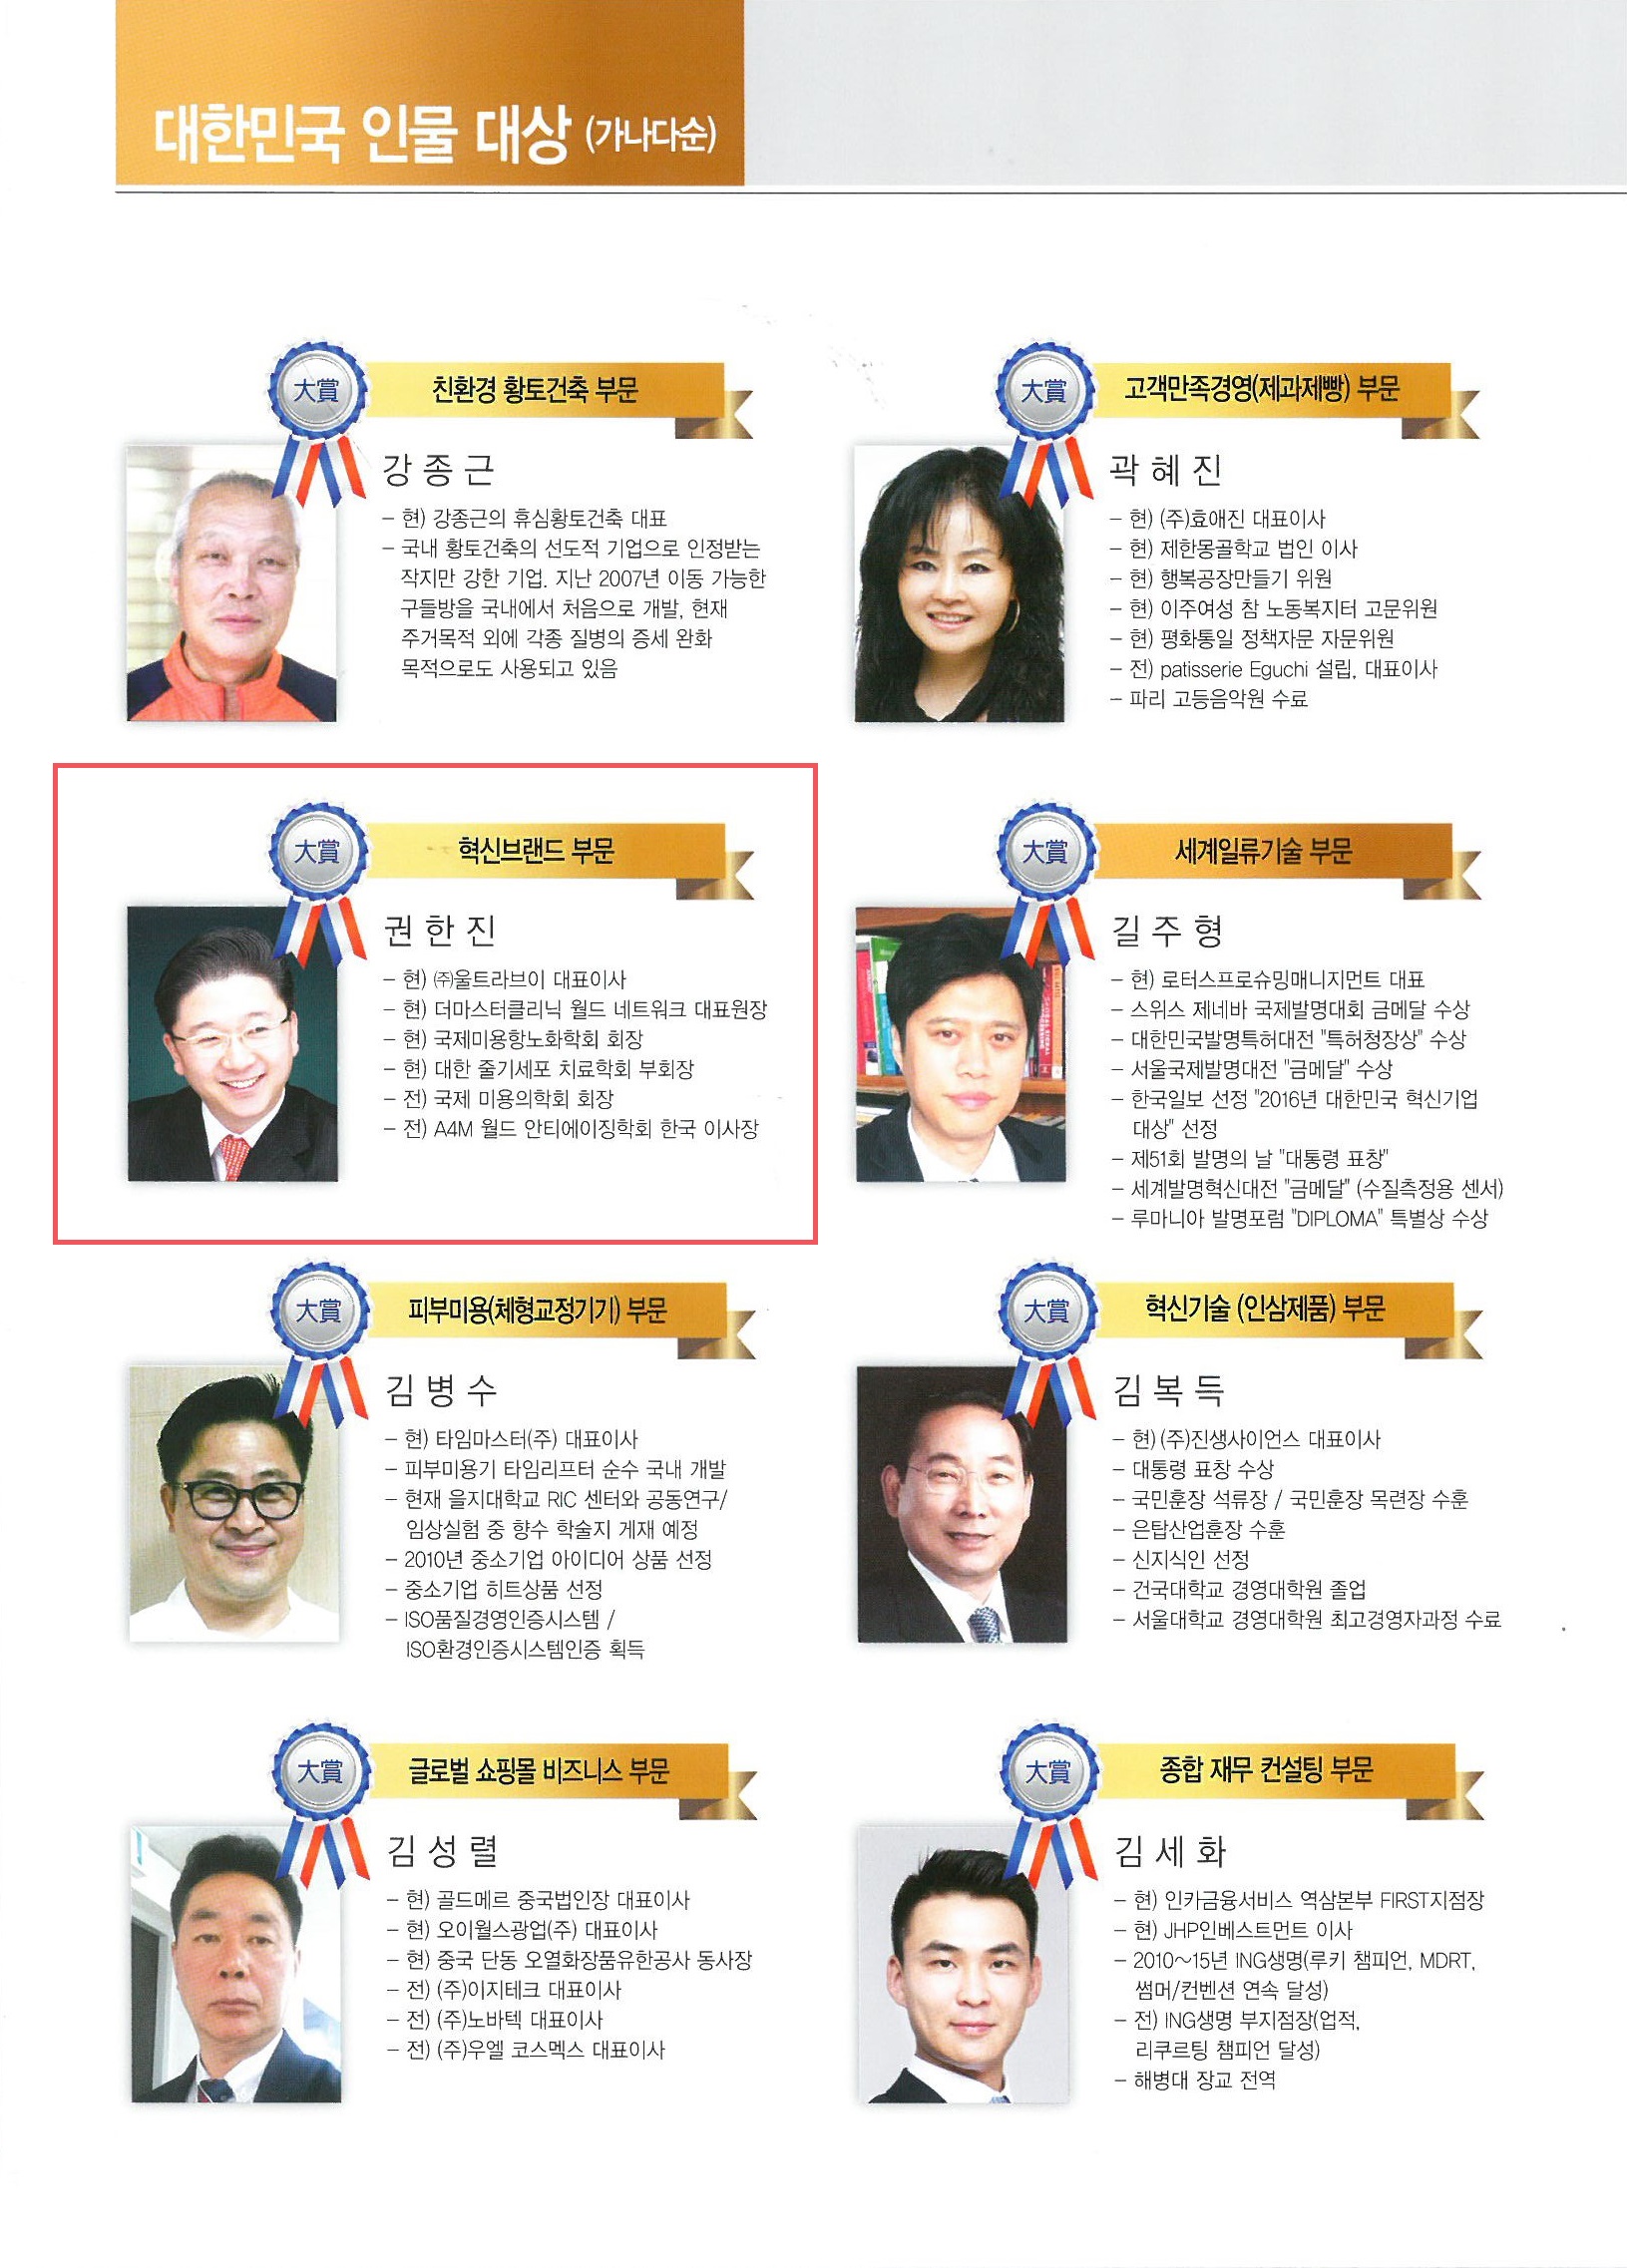 마크-korea best leader awards-내지.jpg